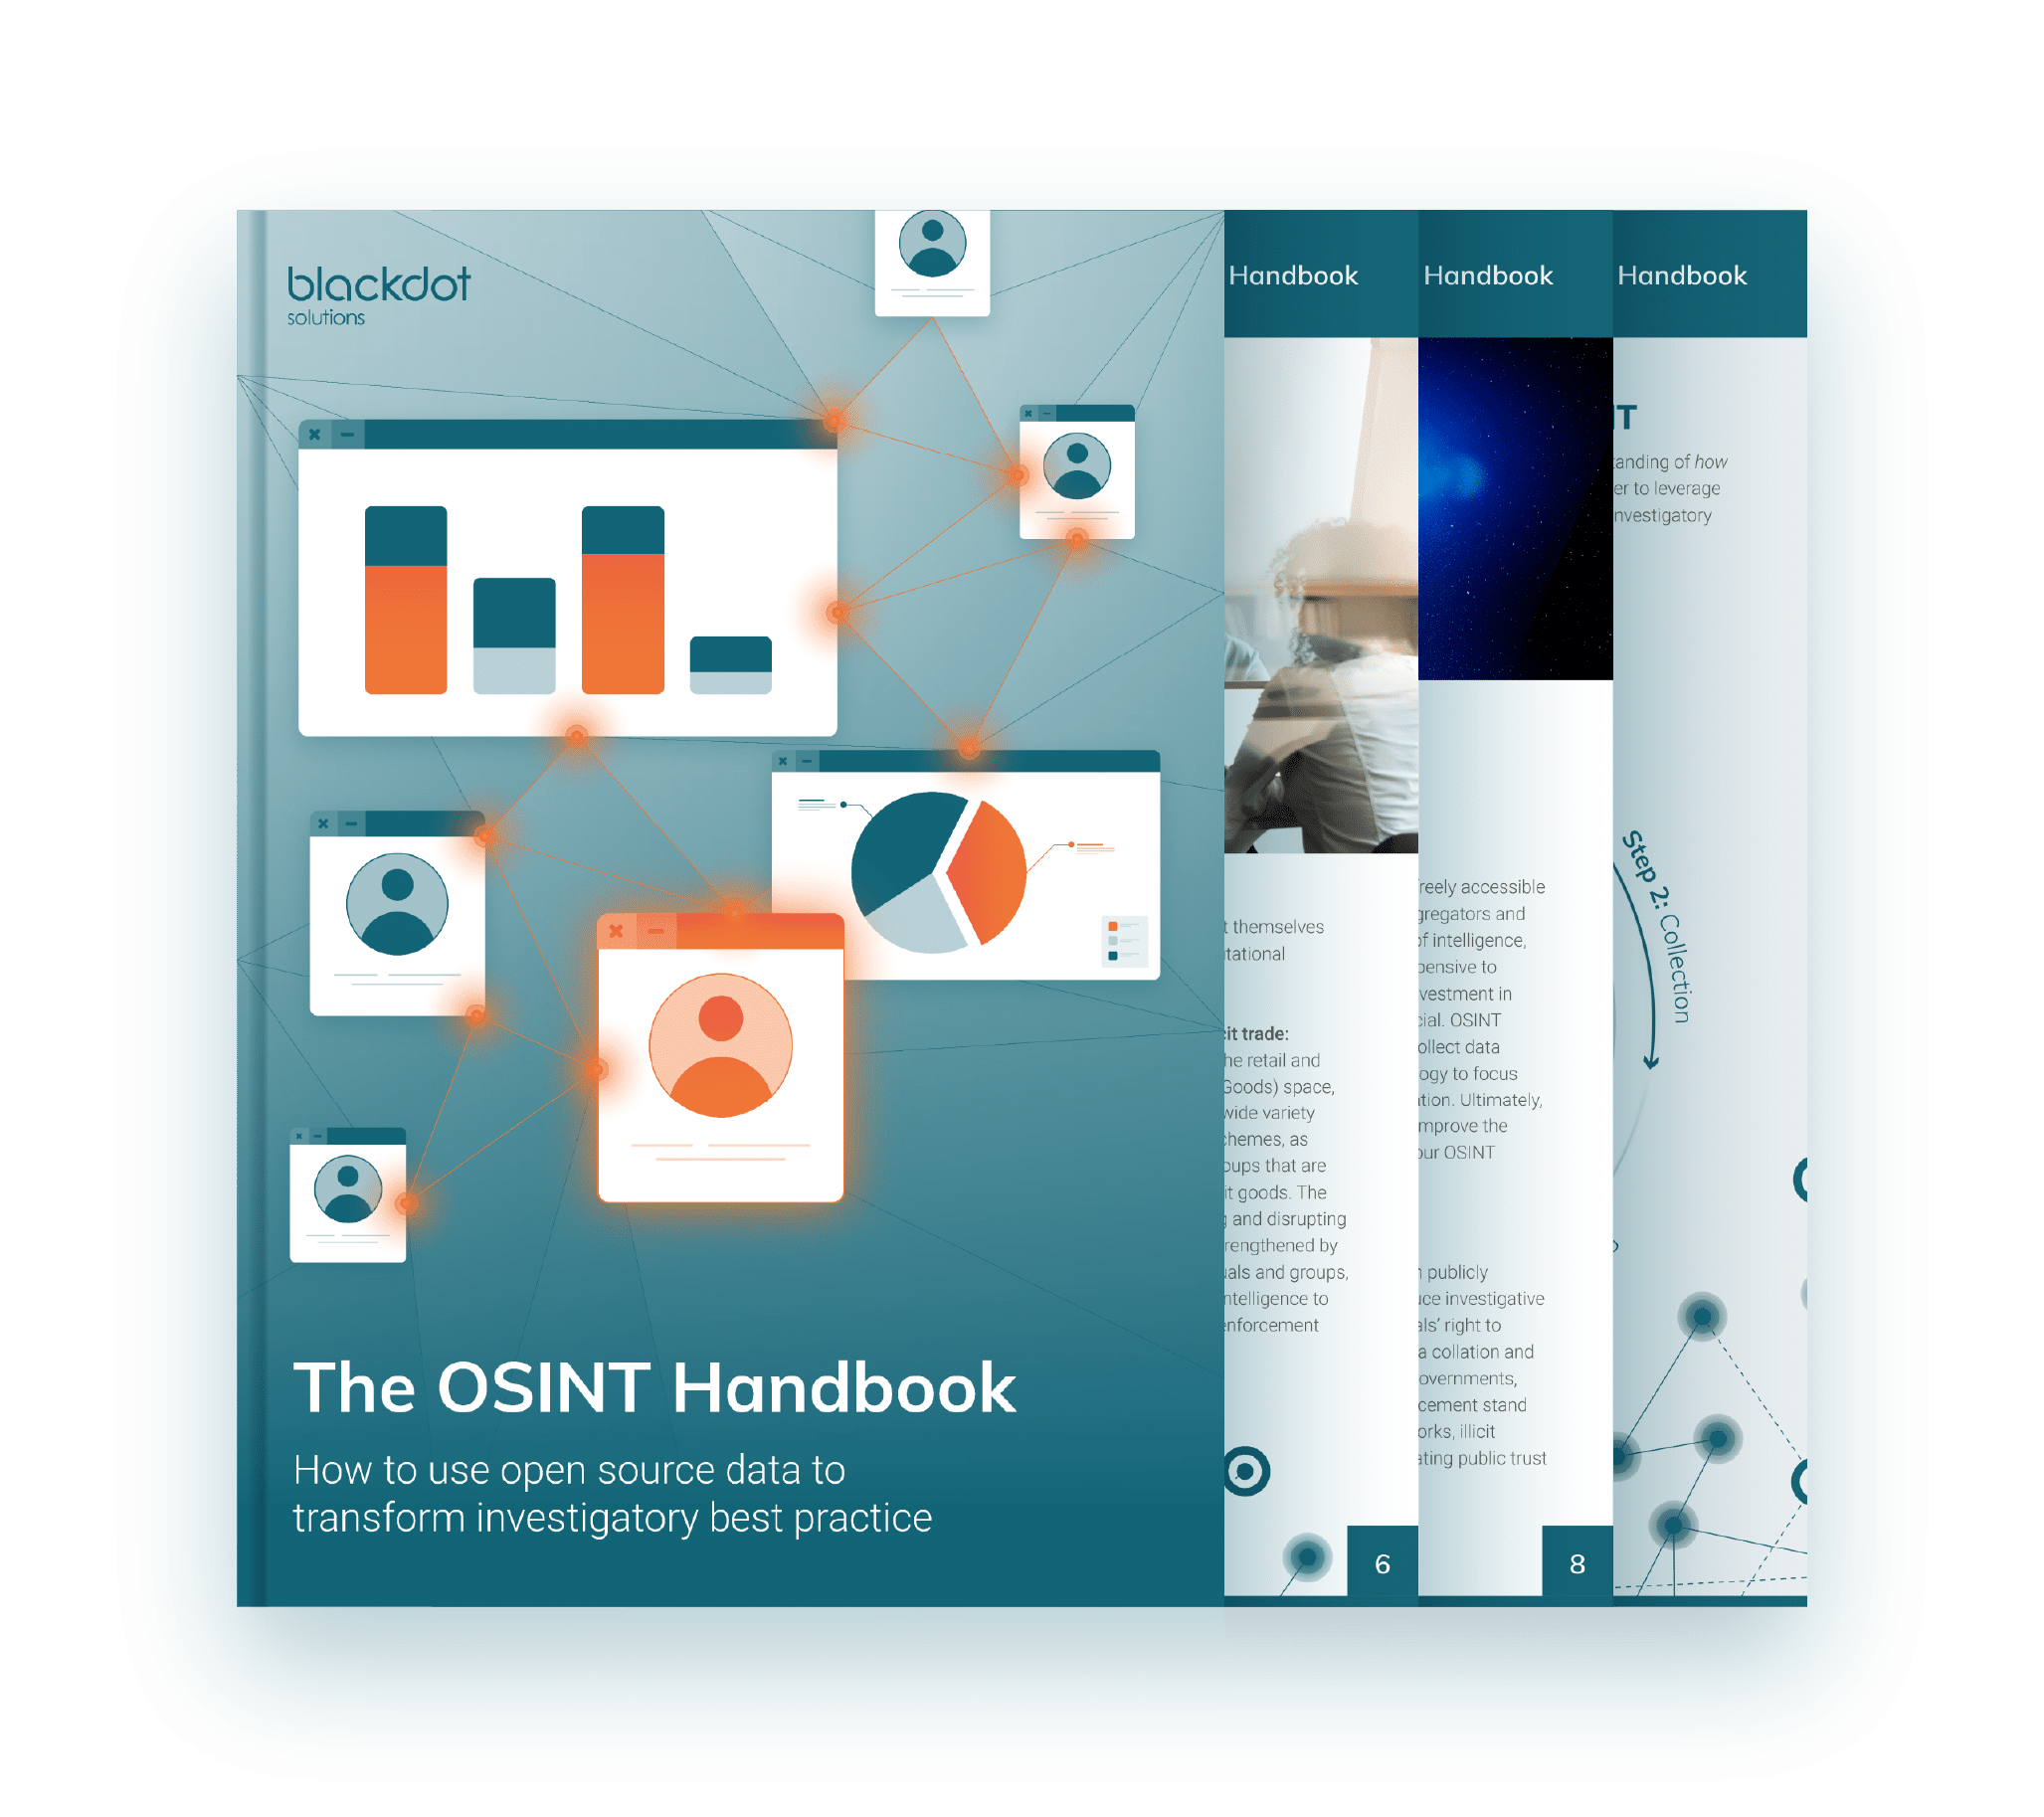 The OSINT Handbook